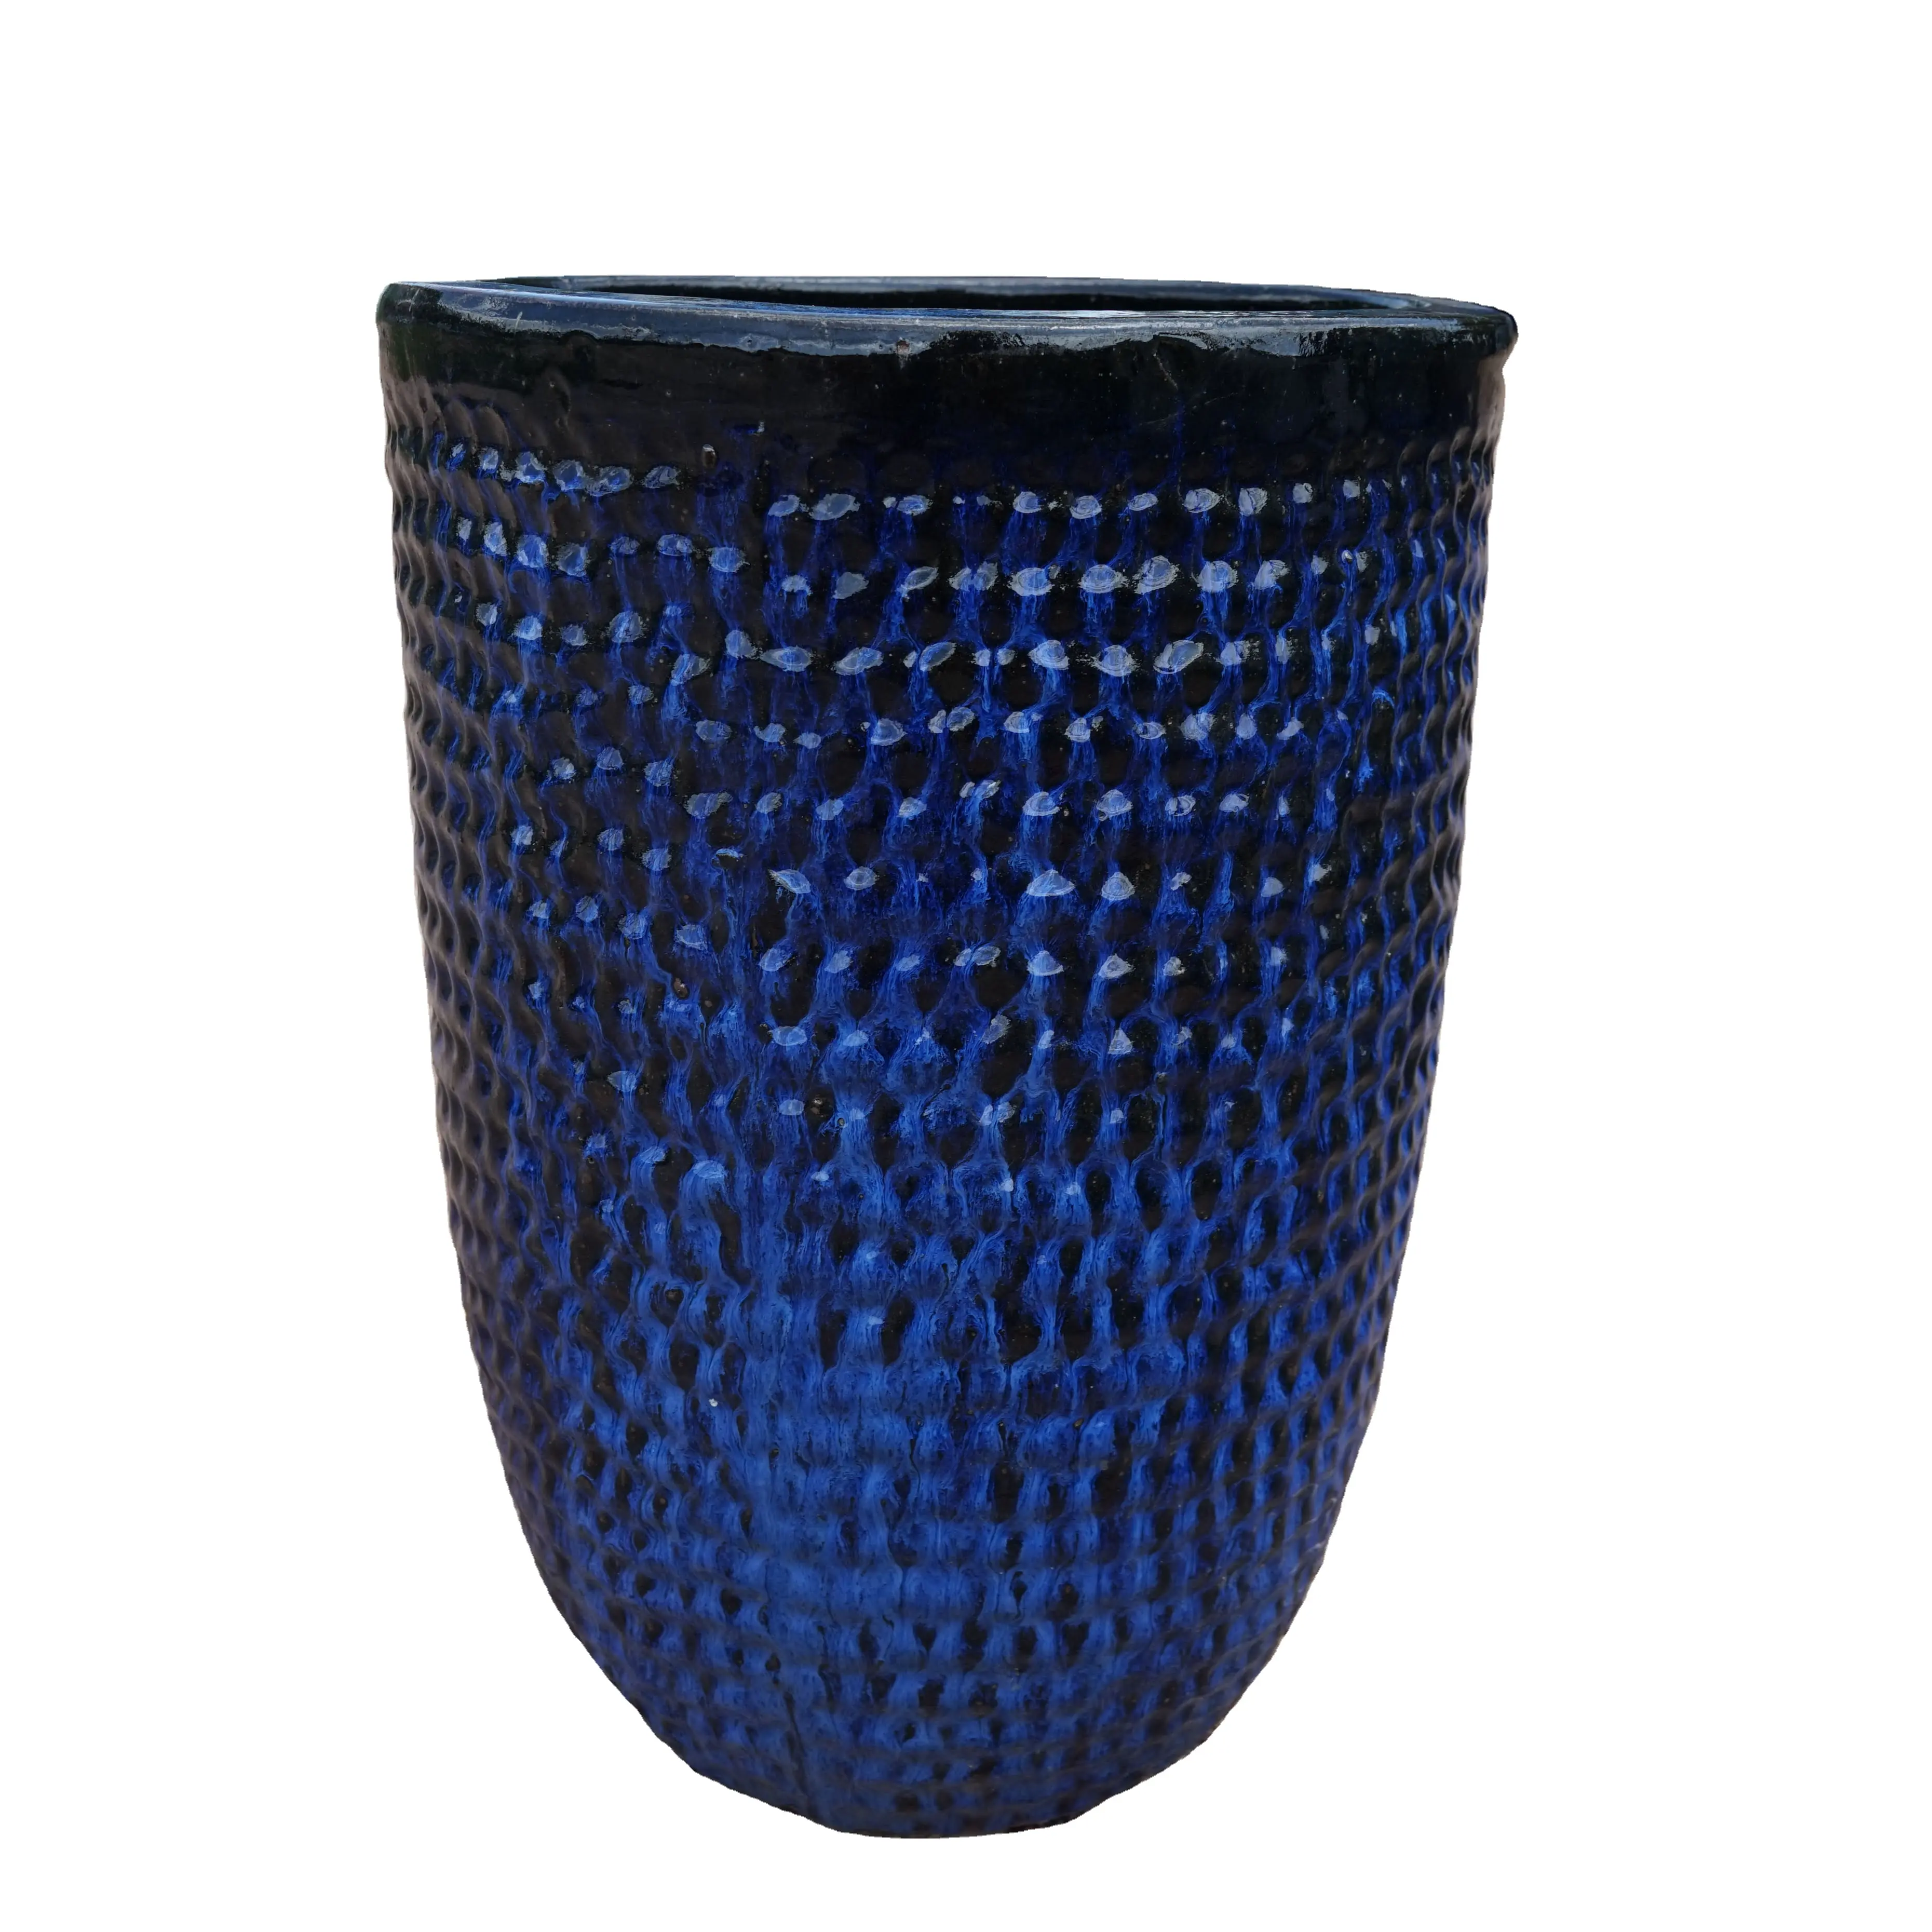 Antico stile retrò di grandi dimensioni Set di 2 vasi e fioriere in ceramica smaltata Vietnam vaso urne e barattoli per giardino modello esterno OCR67ROS2